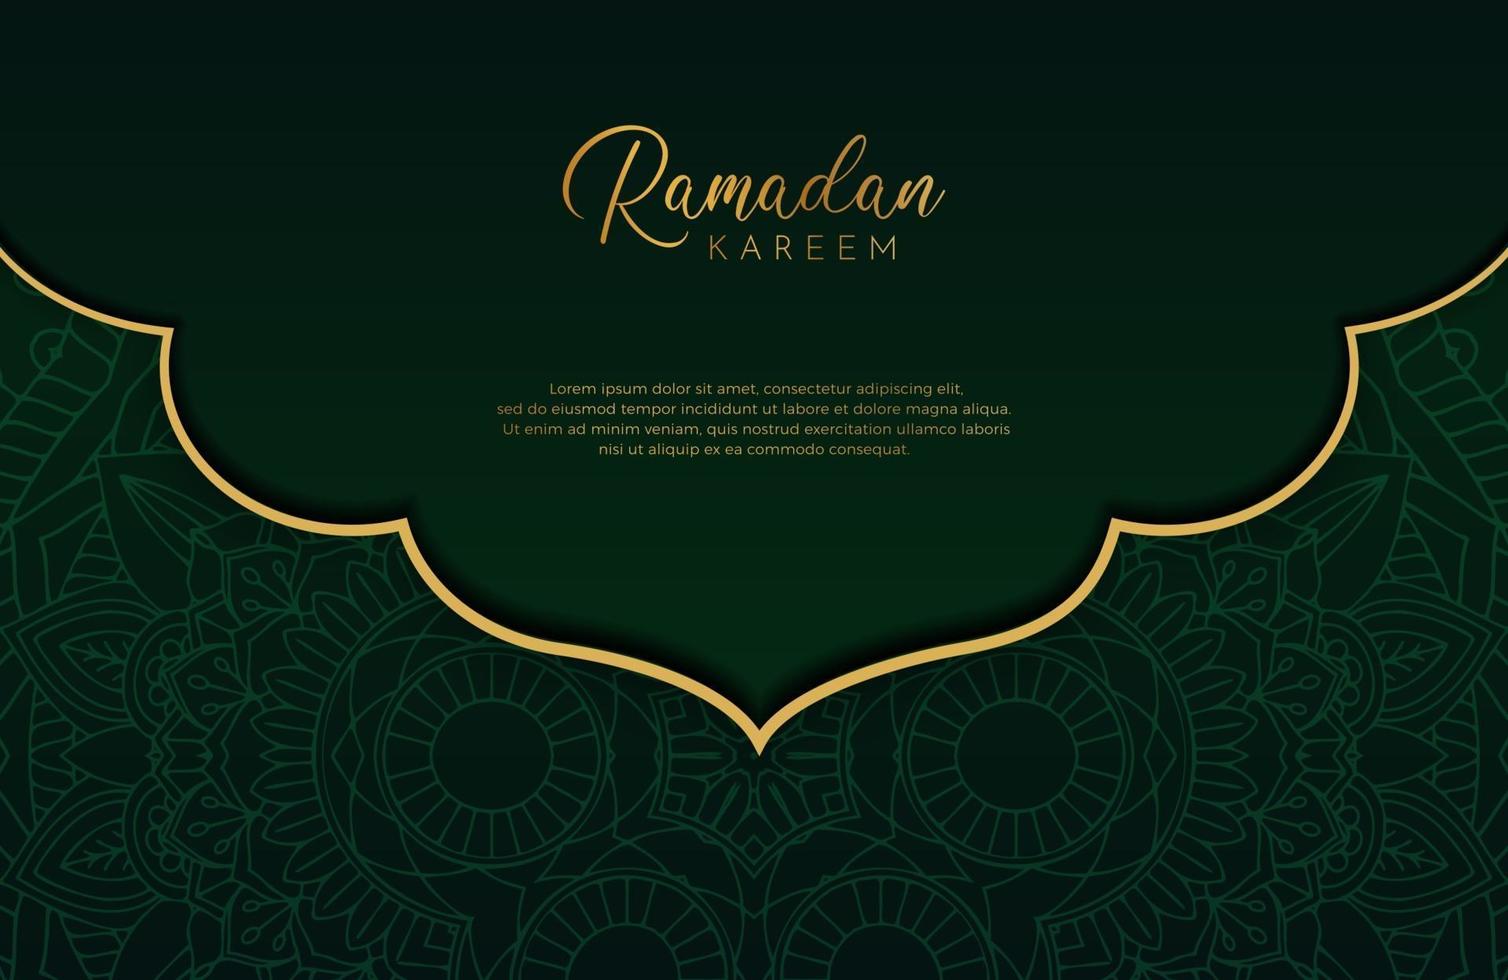 lyxig svart och guld bakgrundsbanner med islamisk arabesk mörkgrön mandala prydnad vektor